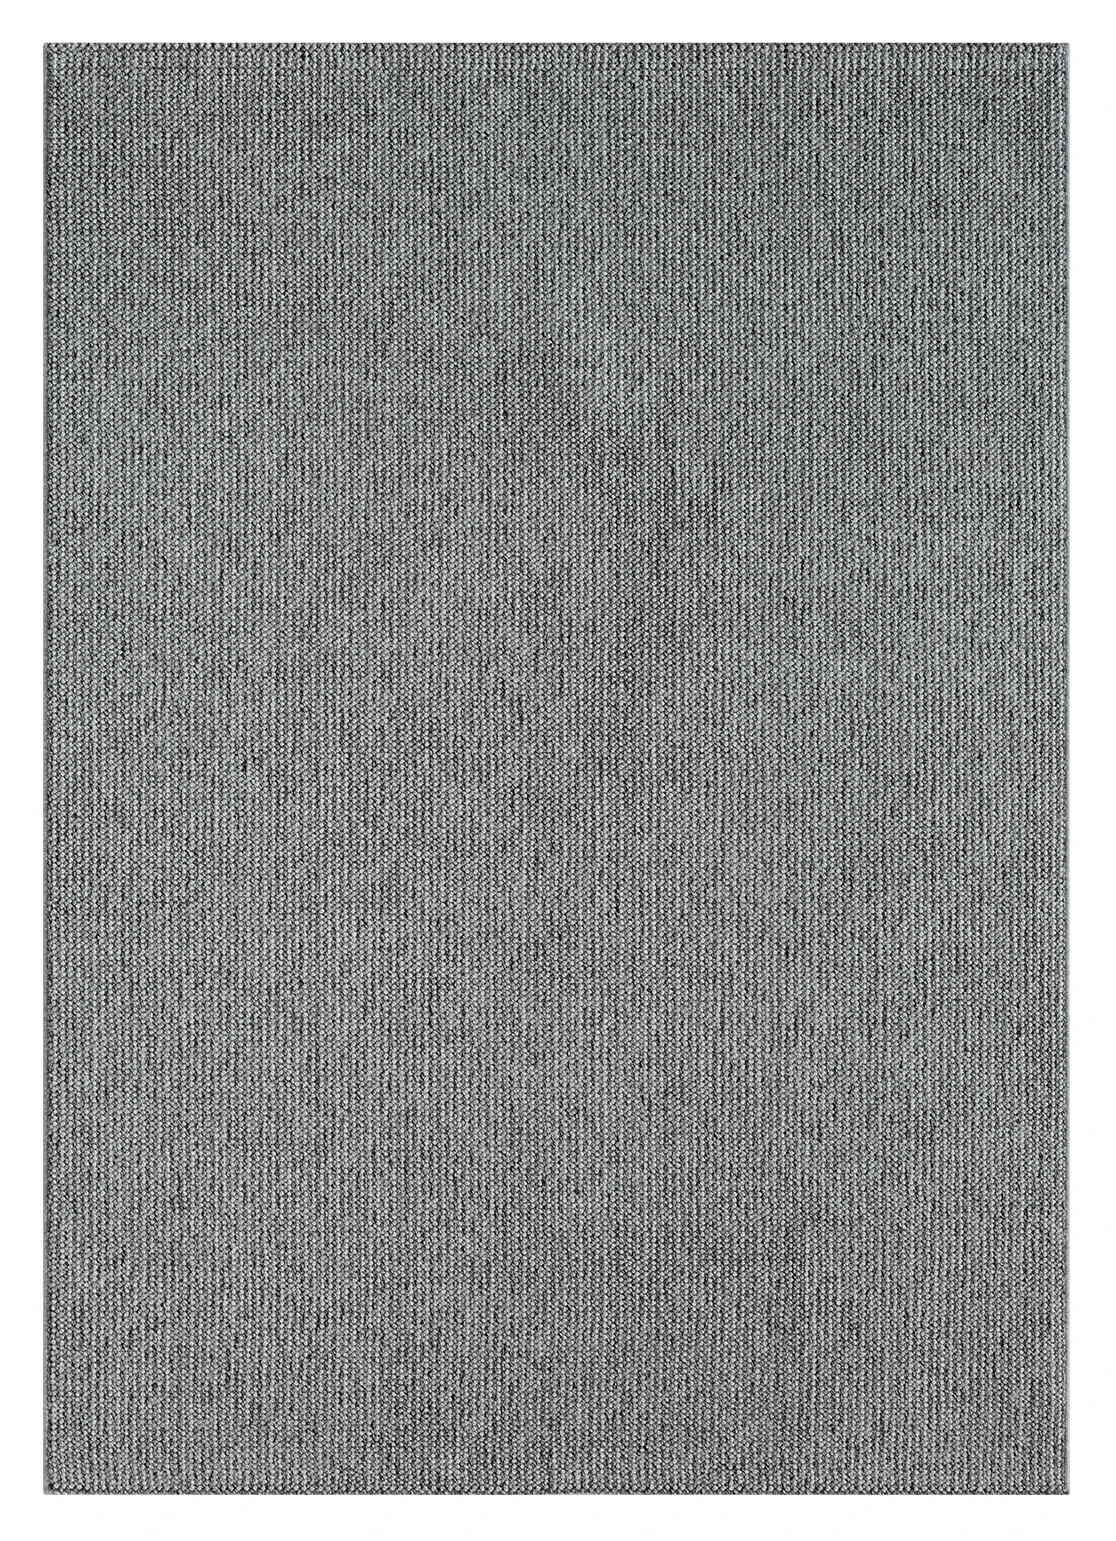 שטיח דגם CALIFORNIA לולאות צבע אפור כהה  : Thumb 3